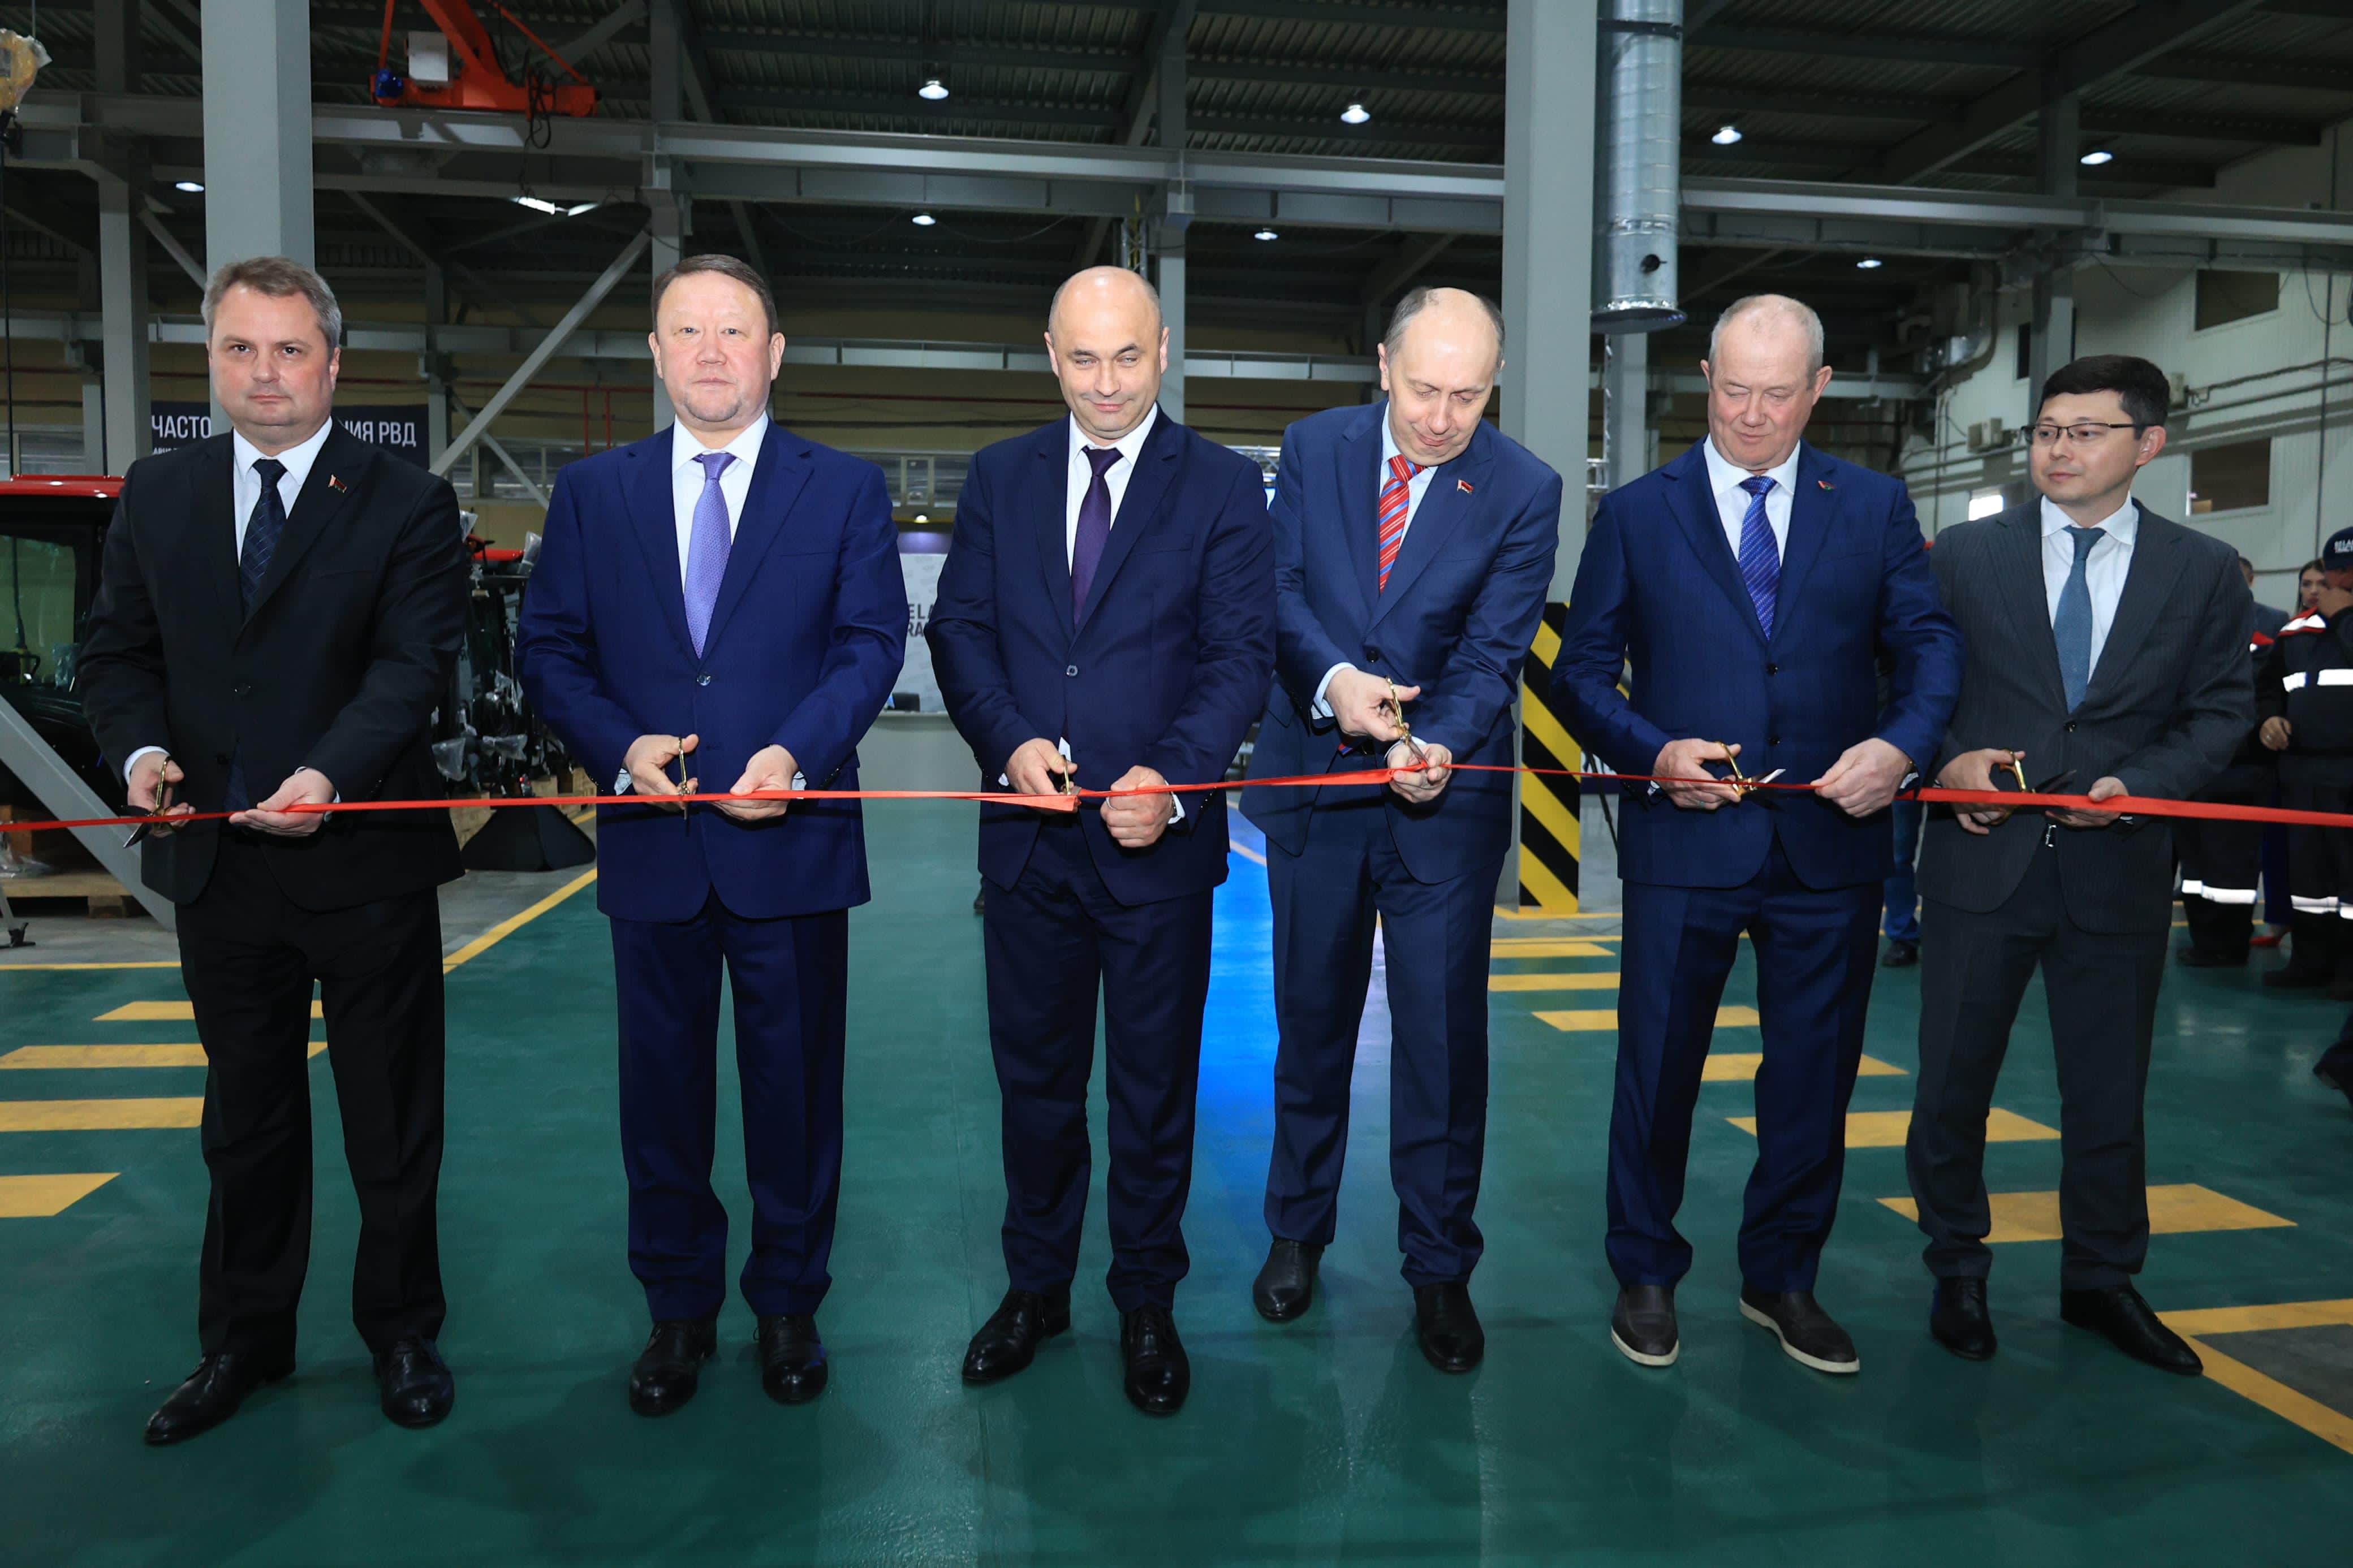 Сегодня в Костанае состоялась церемония открытия нового производственного комплекса ТОО «Машиностроительный завод МТЗ-Казахстан», где будет налажен выпуск кабин для тракторов марки «Беларус».